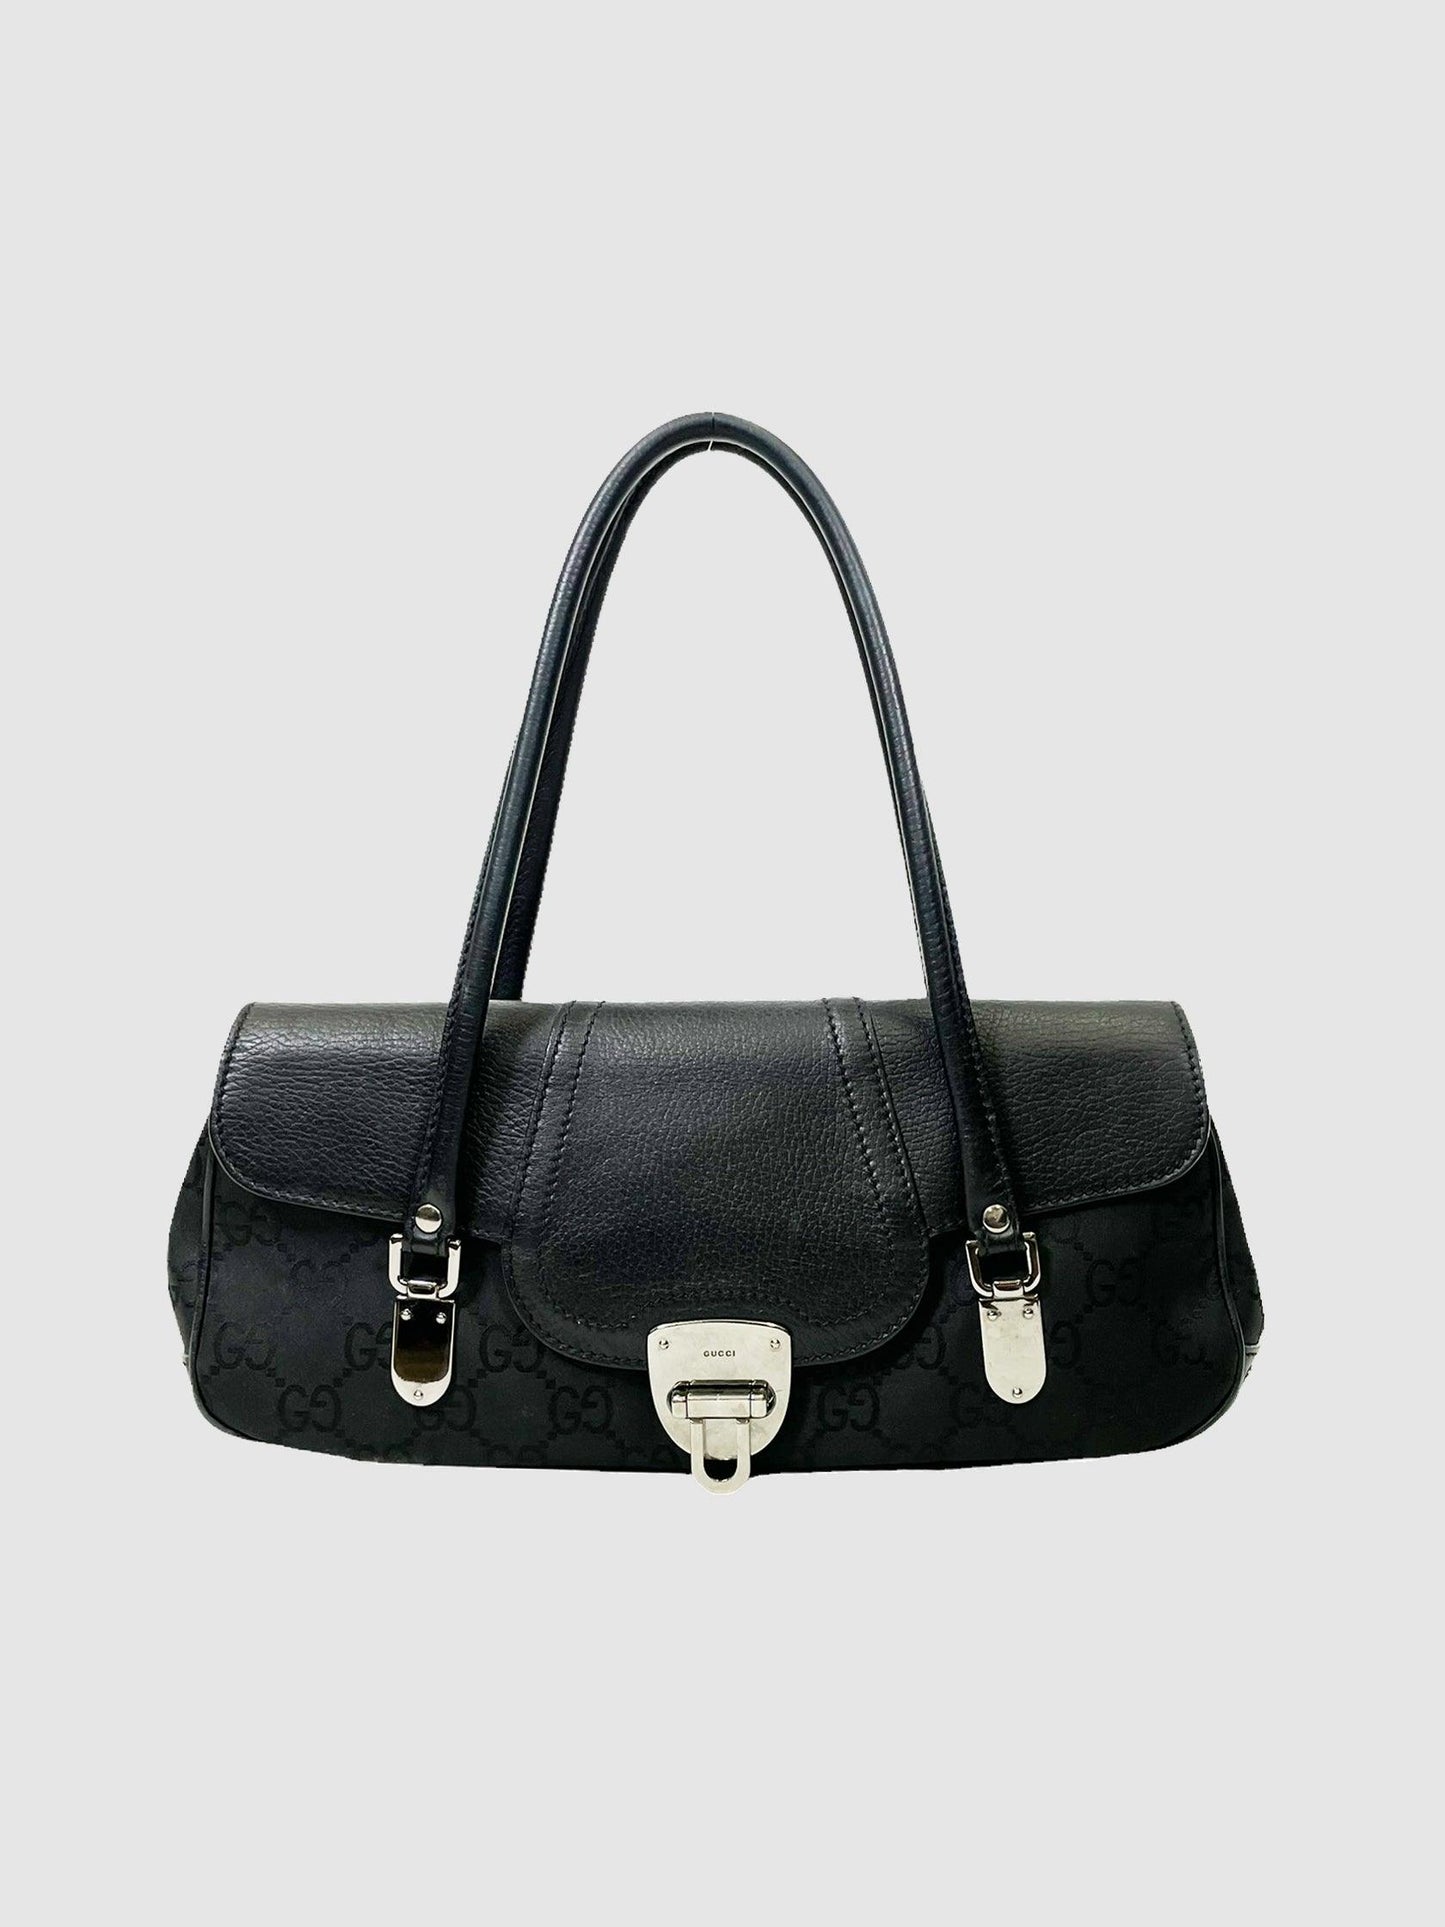 Gucci Black Canvas Monogram Flap Shoulder Bag - Second Nature Boutique